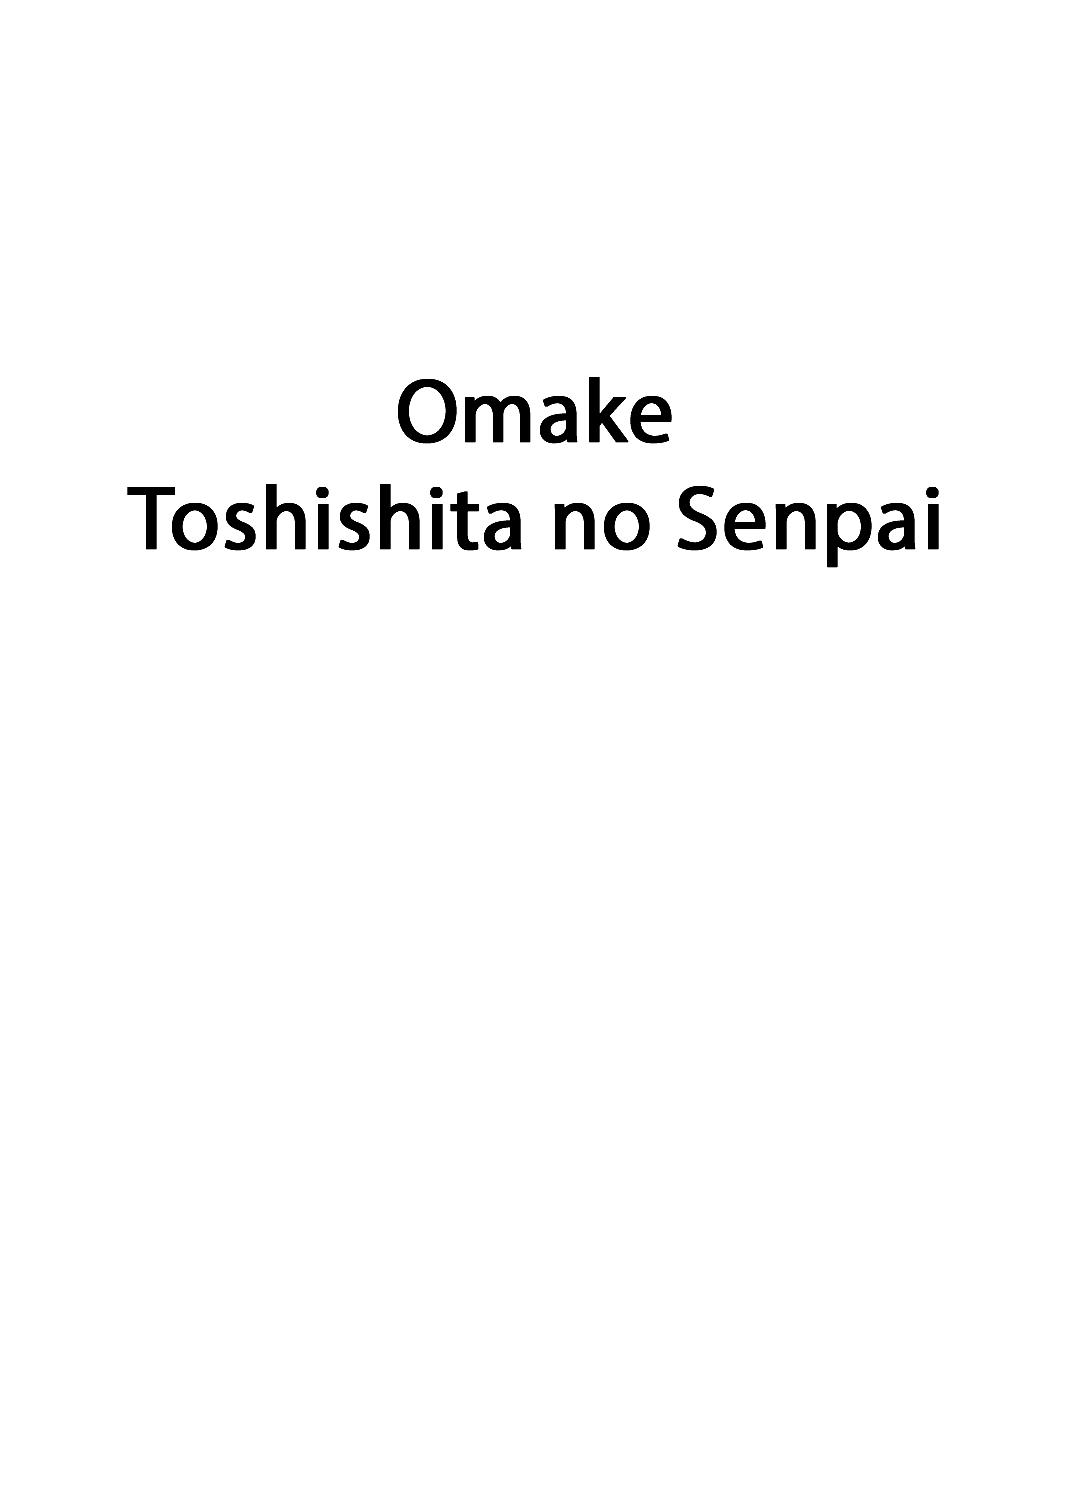 Omake Toshishita no Senpai 1